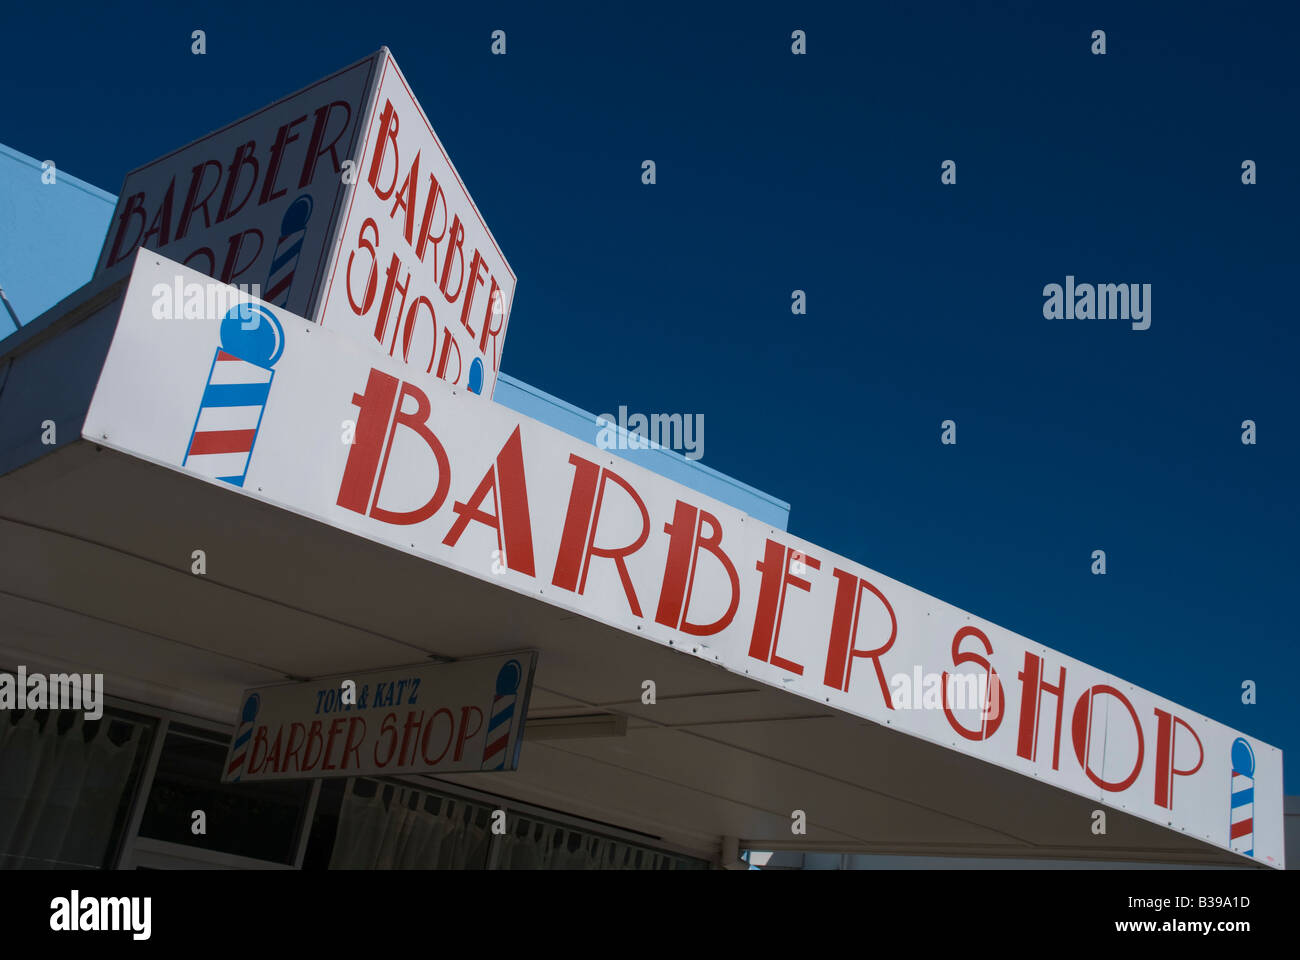 Barber Shop anmelden in Mareeba Queensland Australien Stockfoto